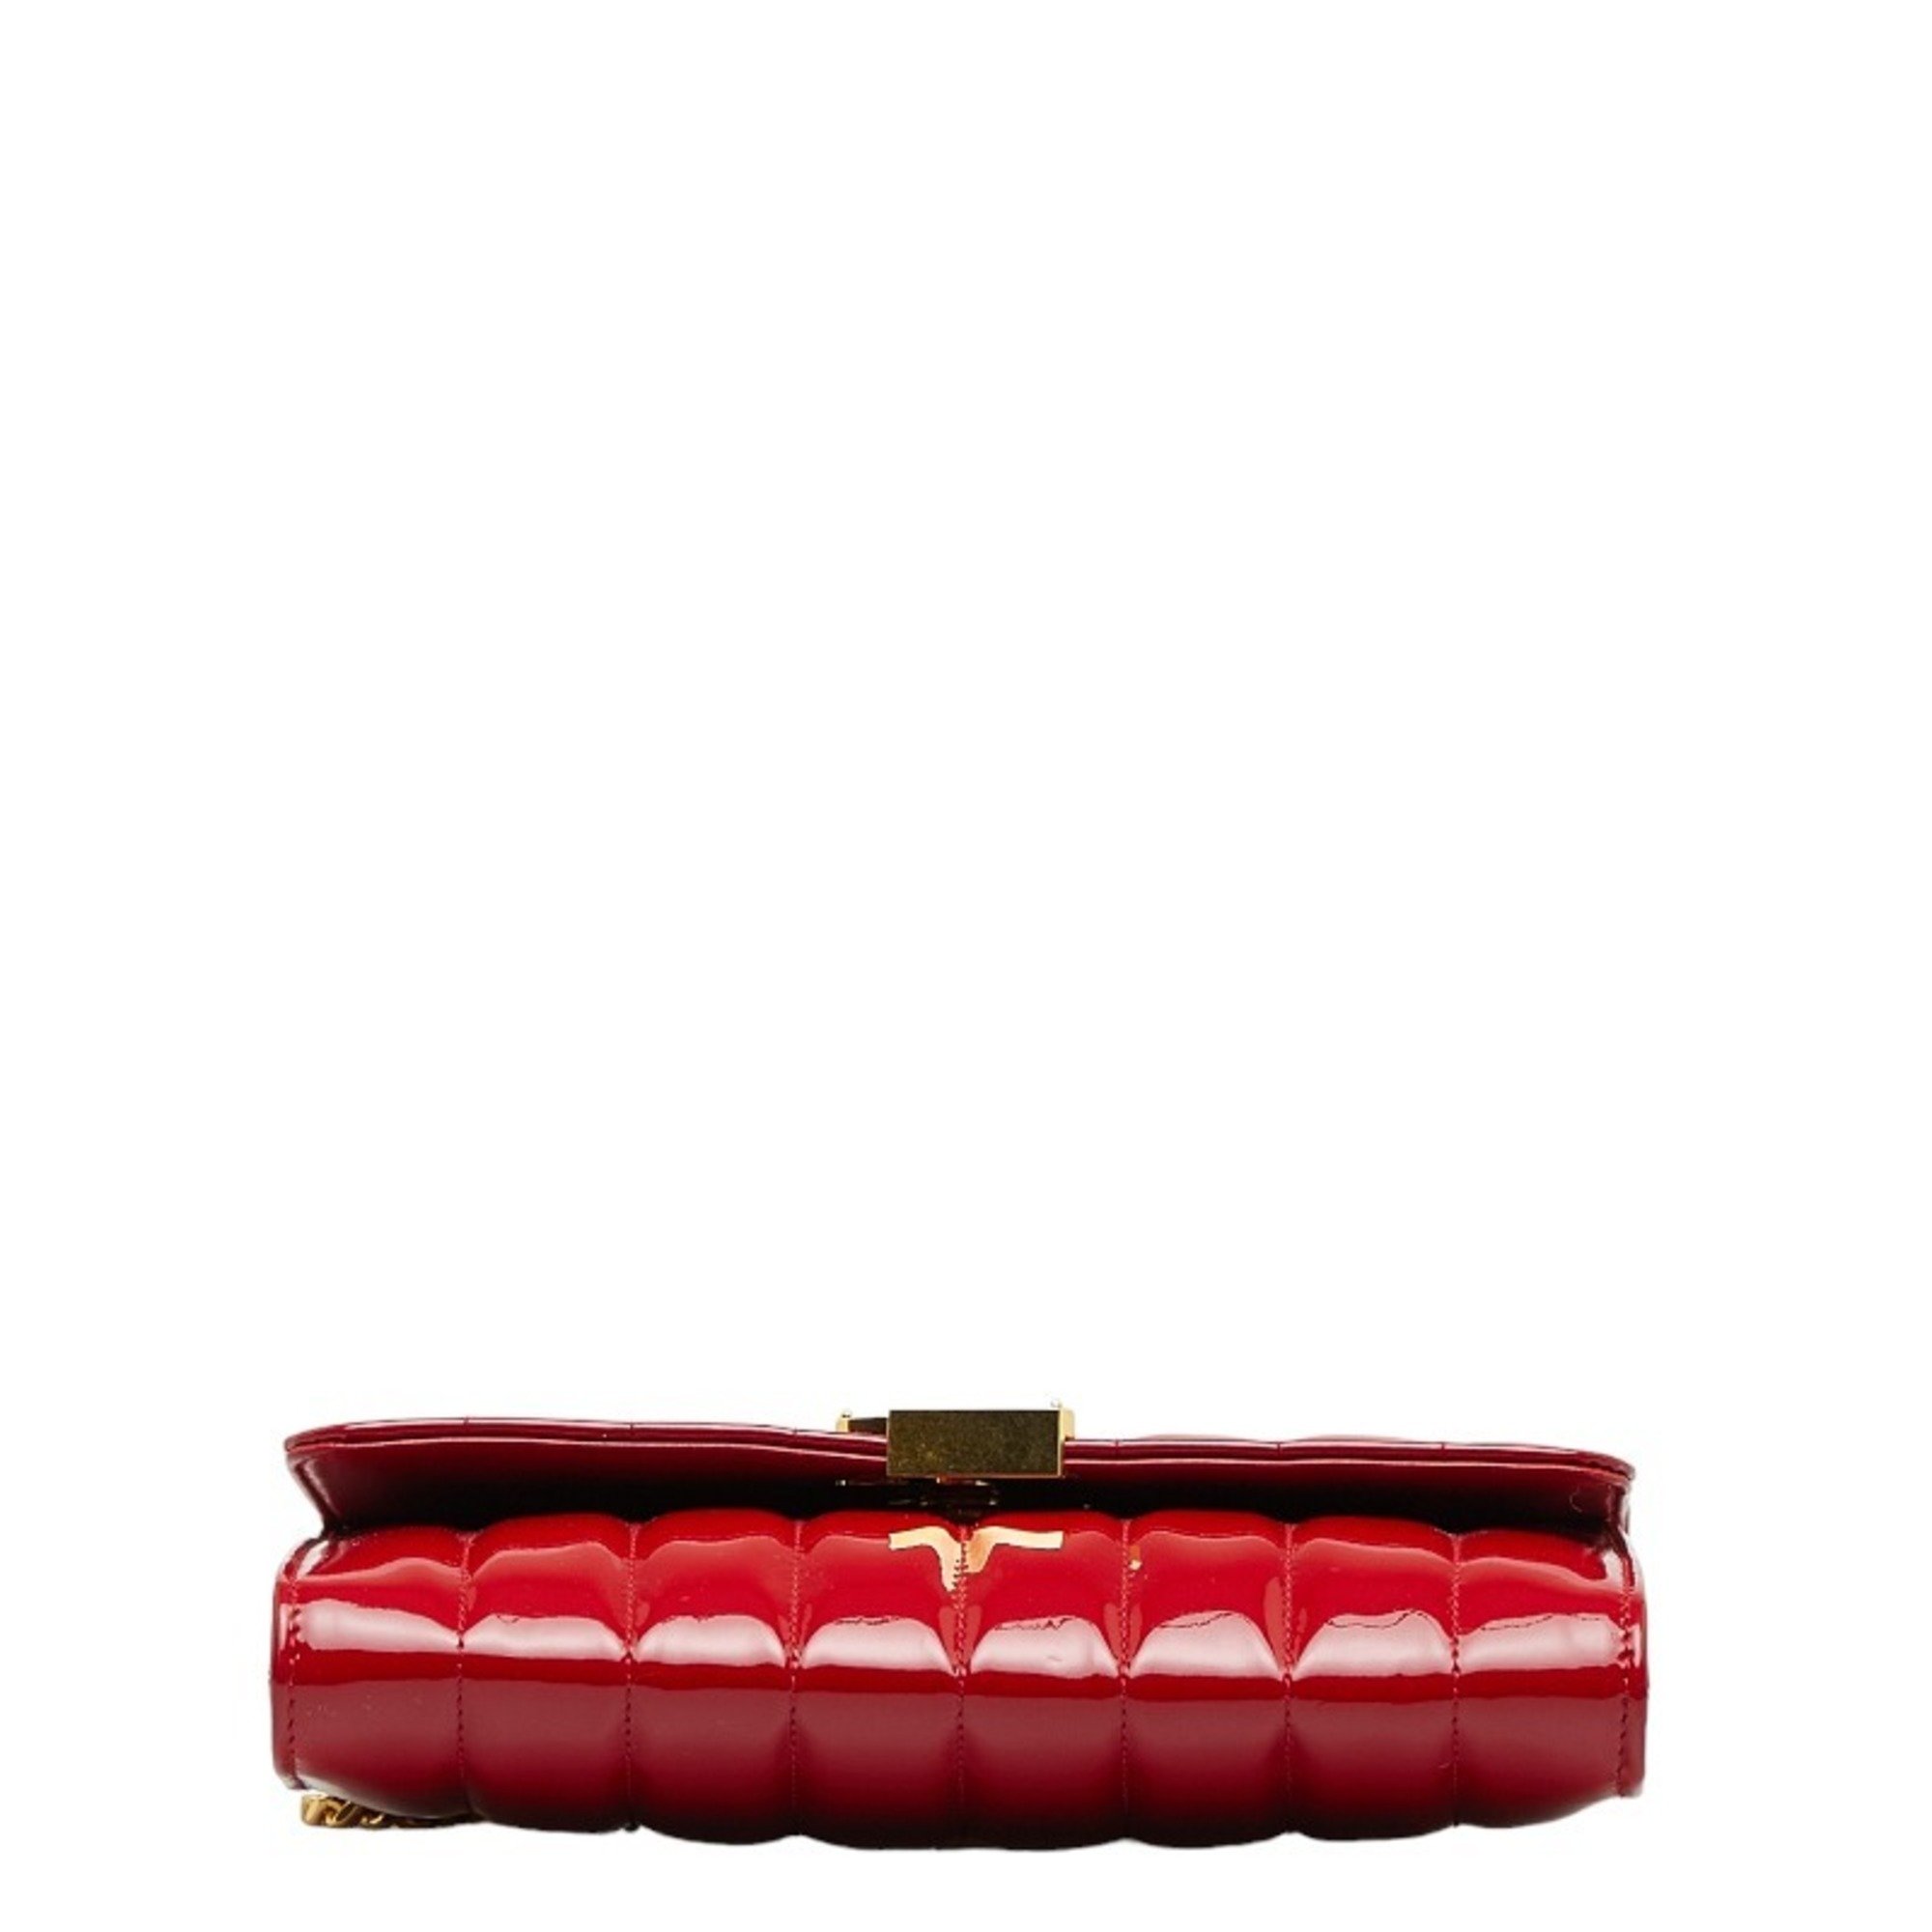 Saint Laurent Viki YSL Chain Shoulder Bag 554125 Red Patent Leather Women's SAINT LAURENT